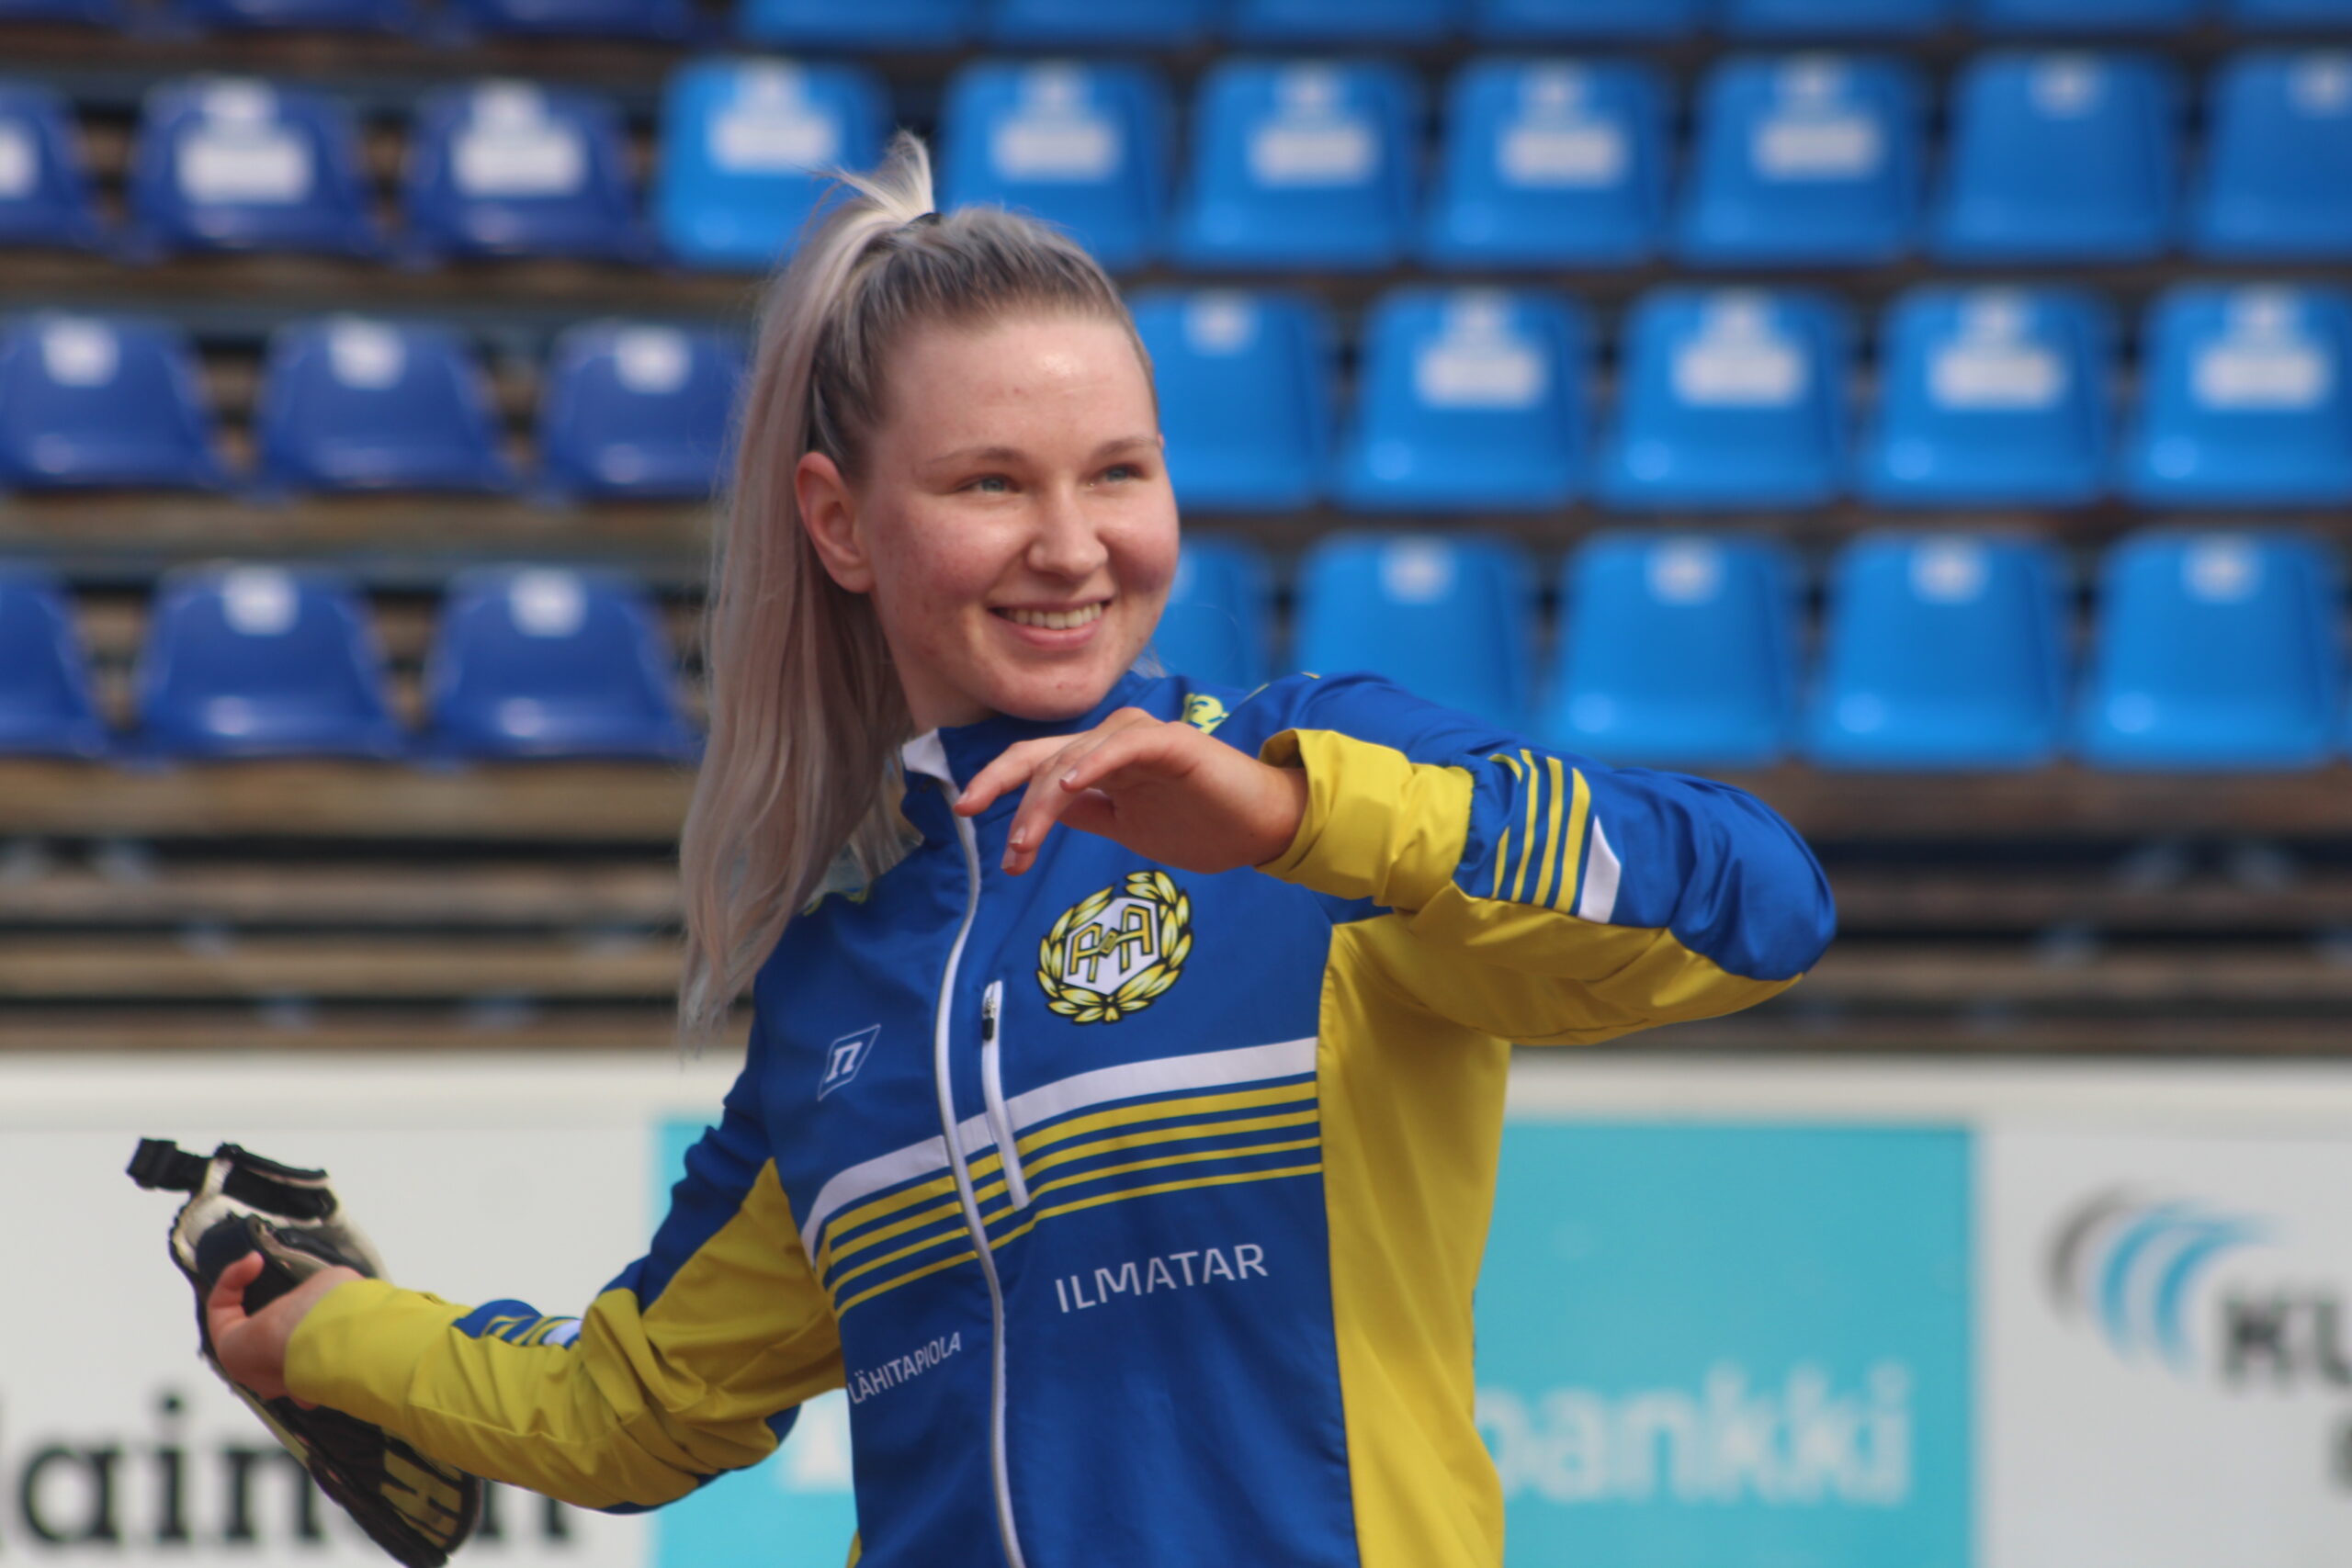 Vimpelin Saarikentällä ratkotaan miesten Superpesiksen sarjapisteiden lisäksi myös muiden muassa räpylänheiton maailmanmestaruuden kohtalo. Oman tyylinäytteensä antaa Alajärven Ankkureiden naisten suomensarjajoukkueen Roosa Aho.